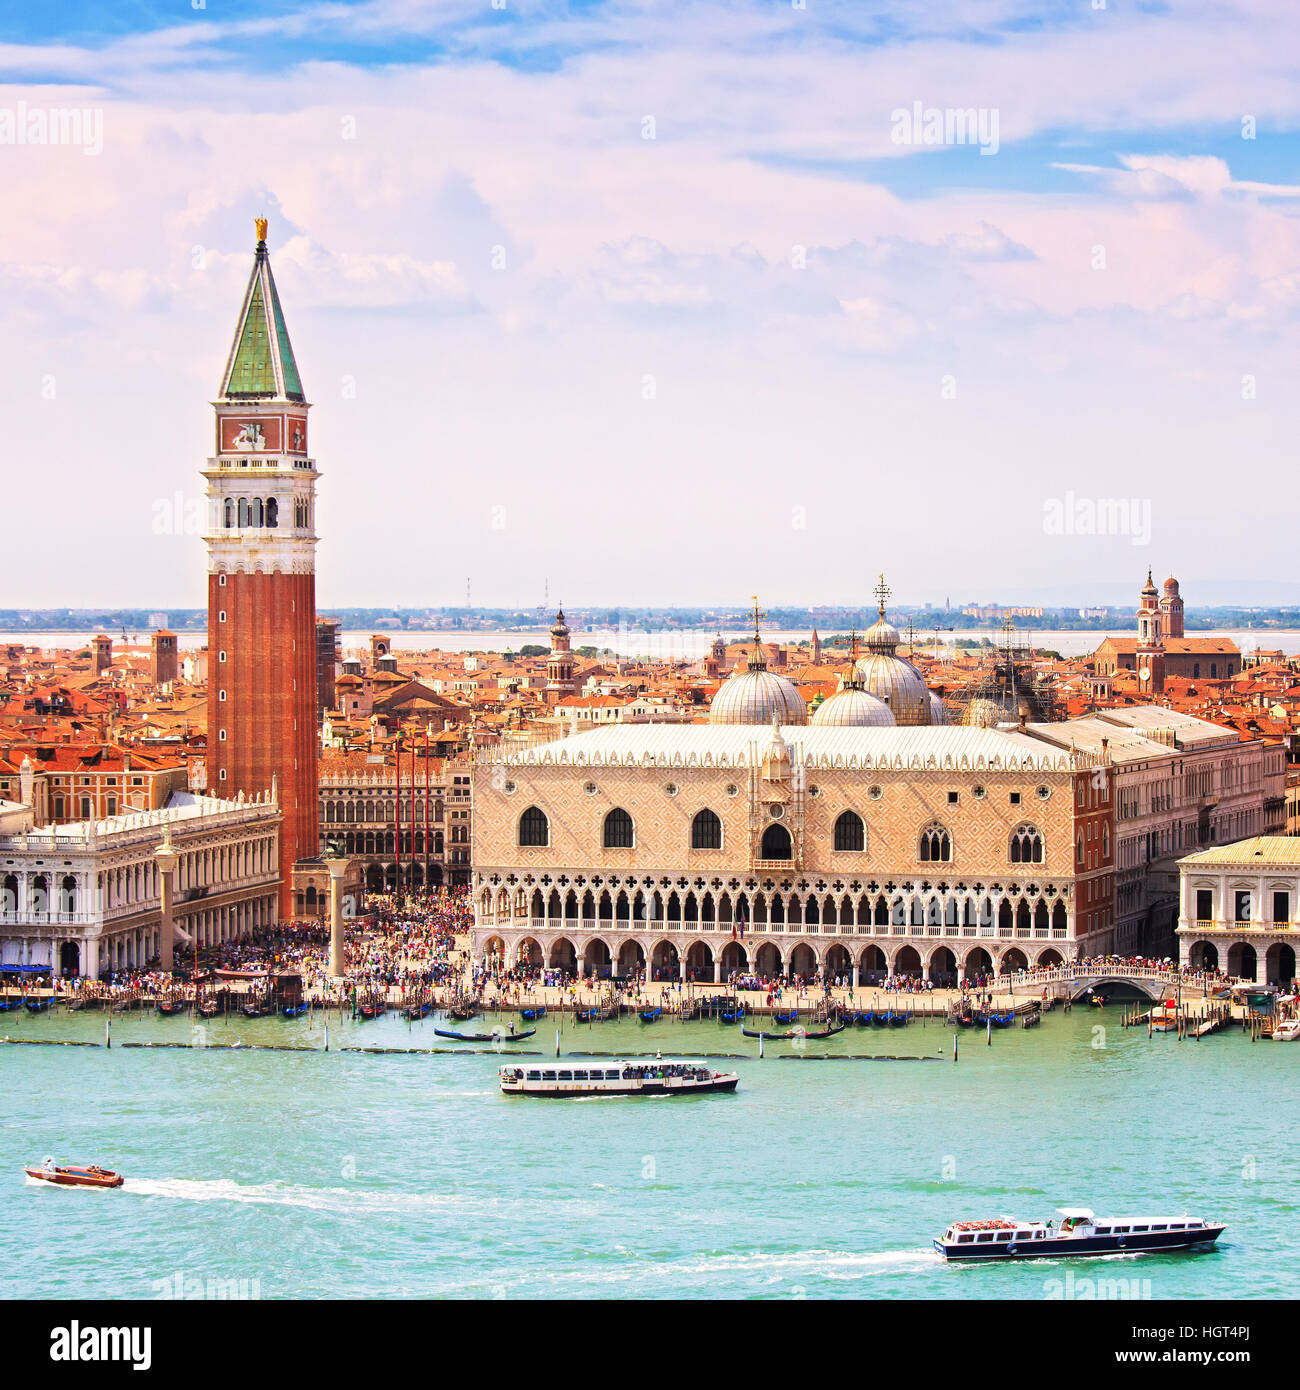 Vue de Venise, vue aérienne de la Piazza San Marco ou Place St Marc, Le Campanile et le Palais des Doges ou Ducale. L'Italie, l'Europe. Banque D'Images